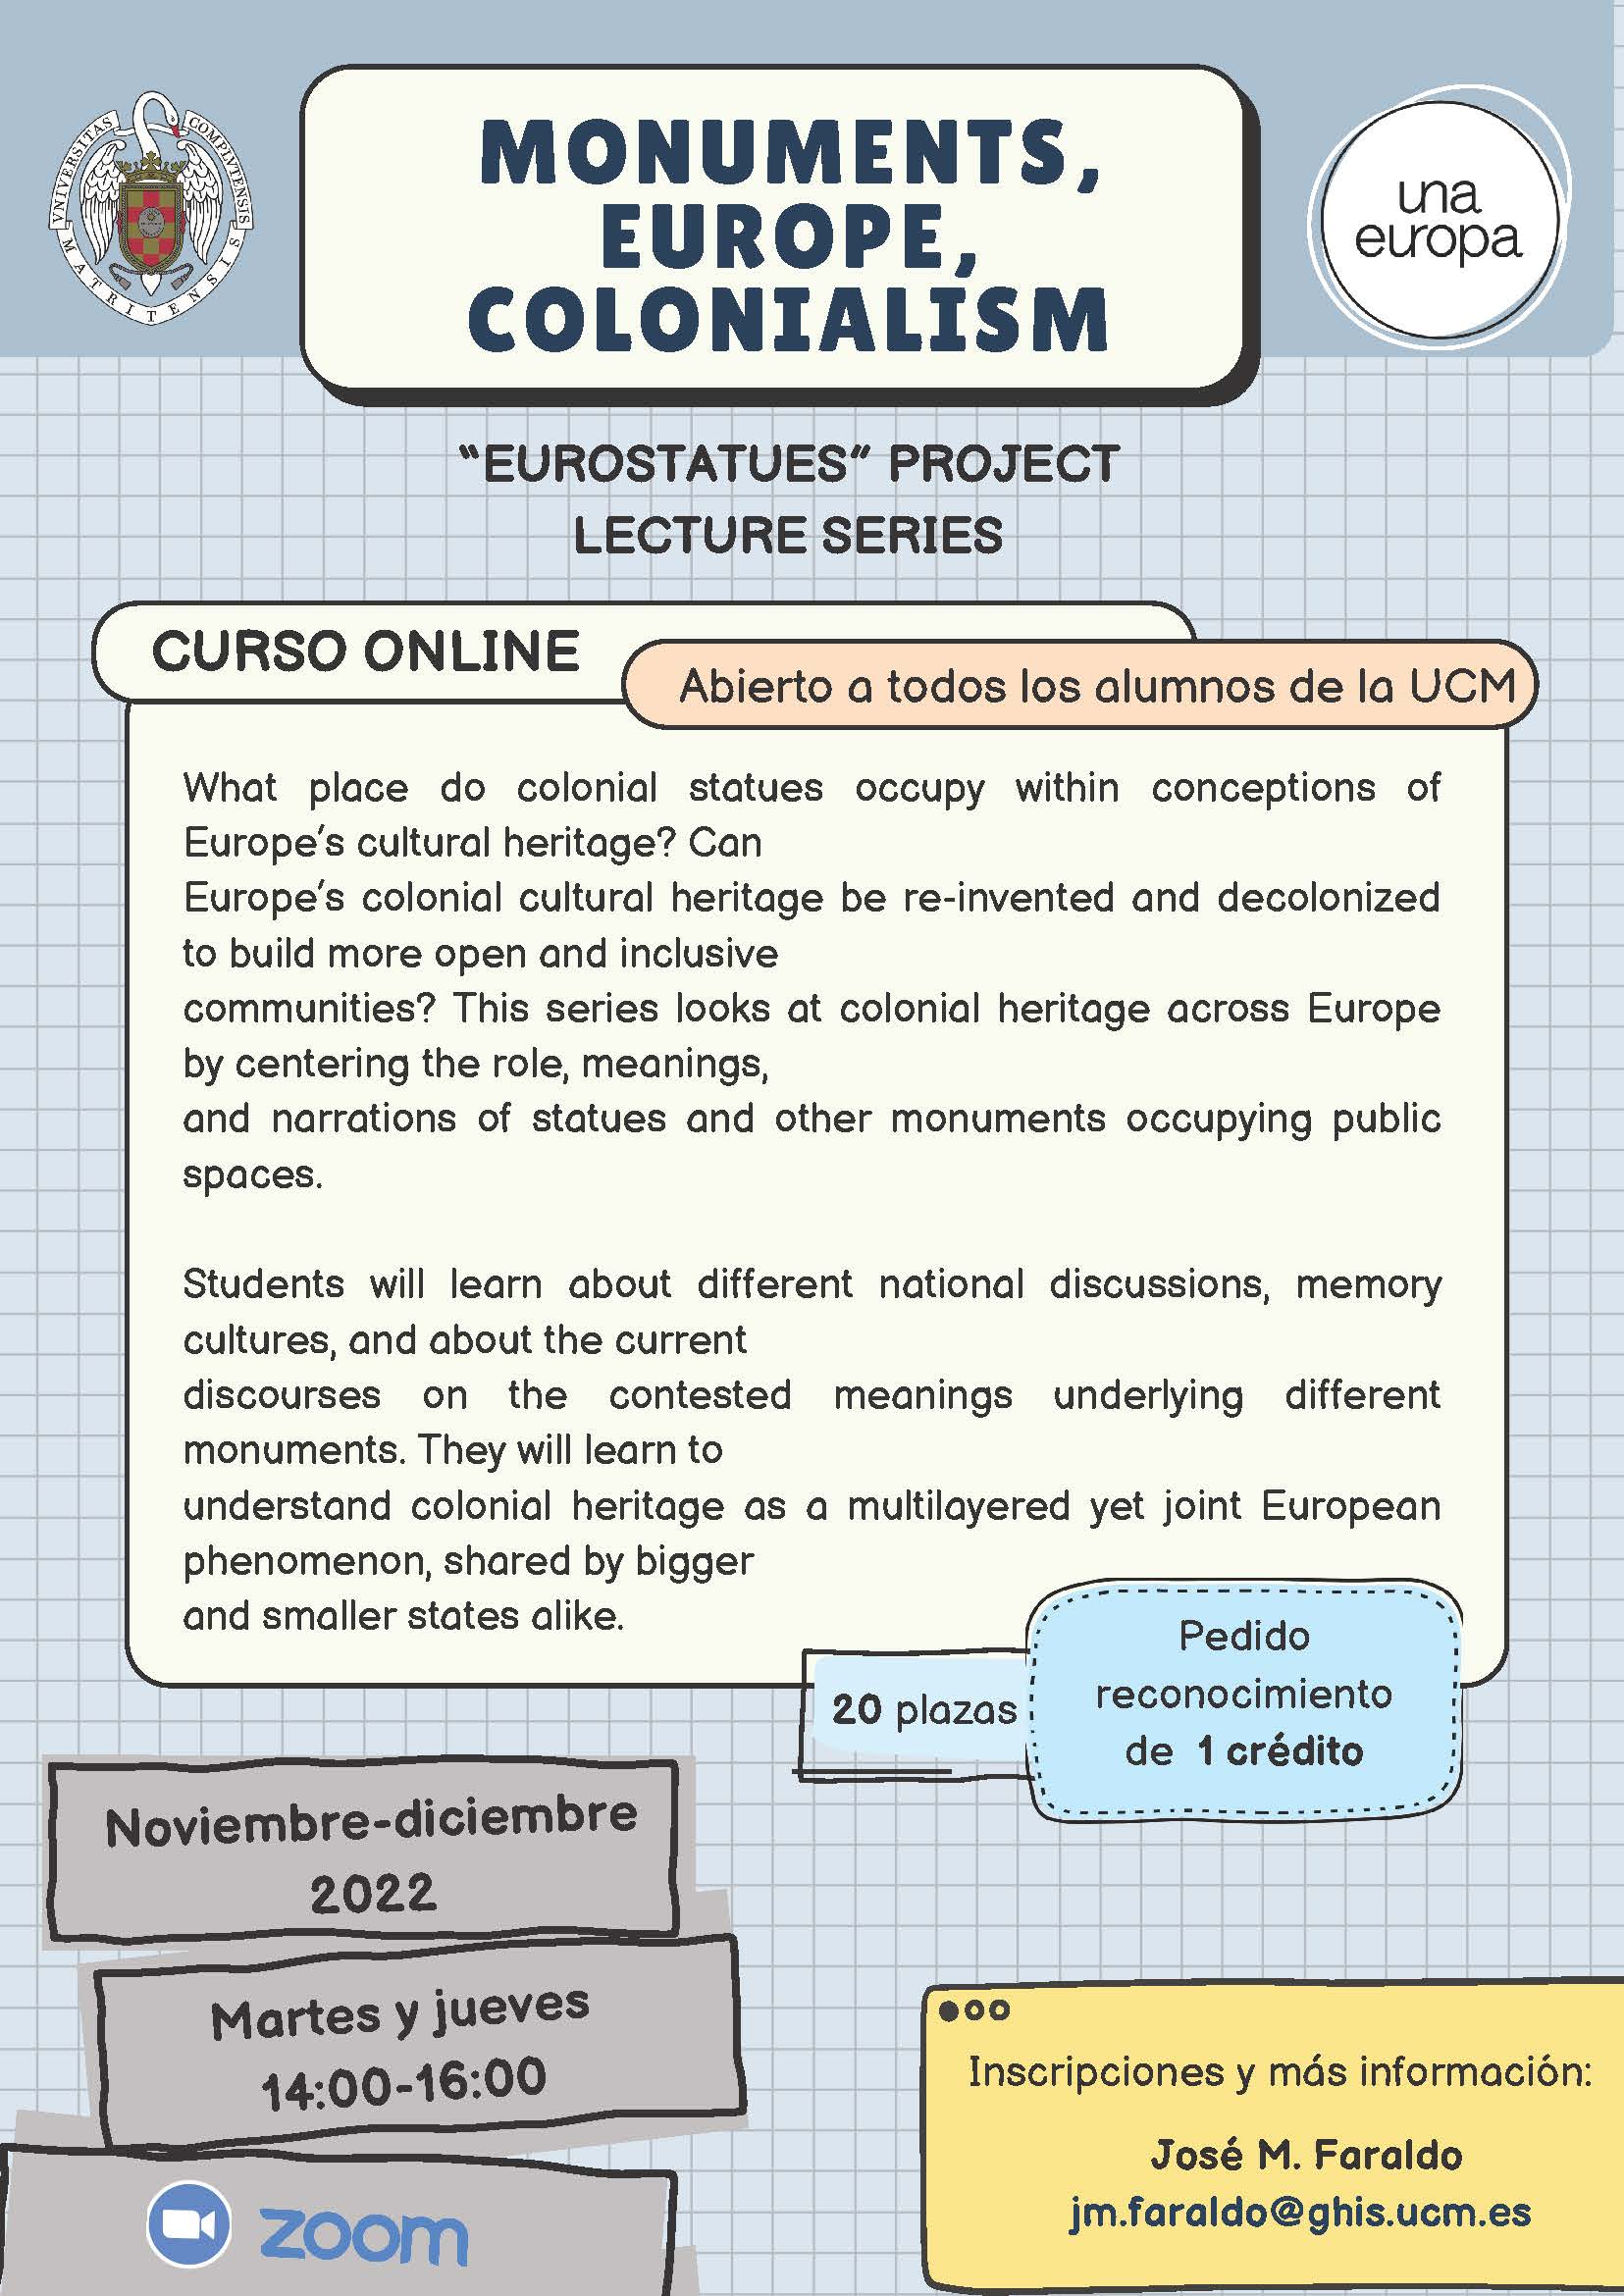 Curso online Monuments, Europe, Colonialism (3 Nov. - 13 Dic. 2022) - UNAEUROPA